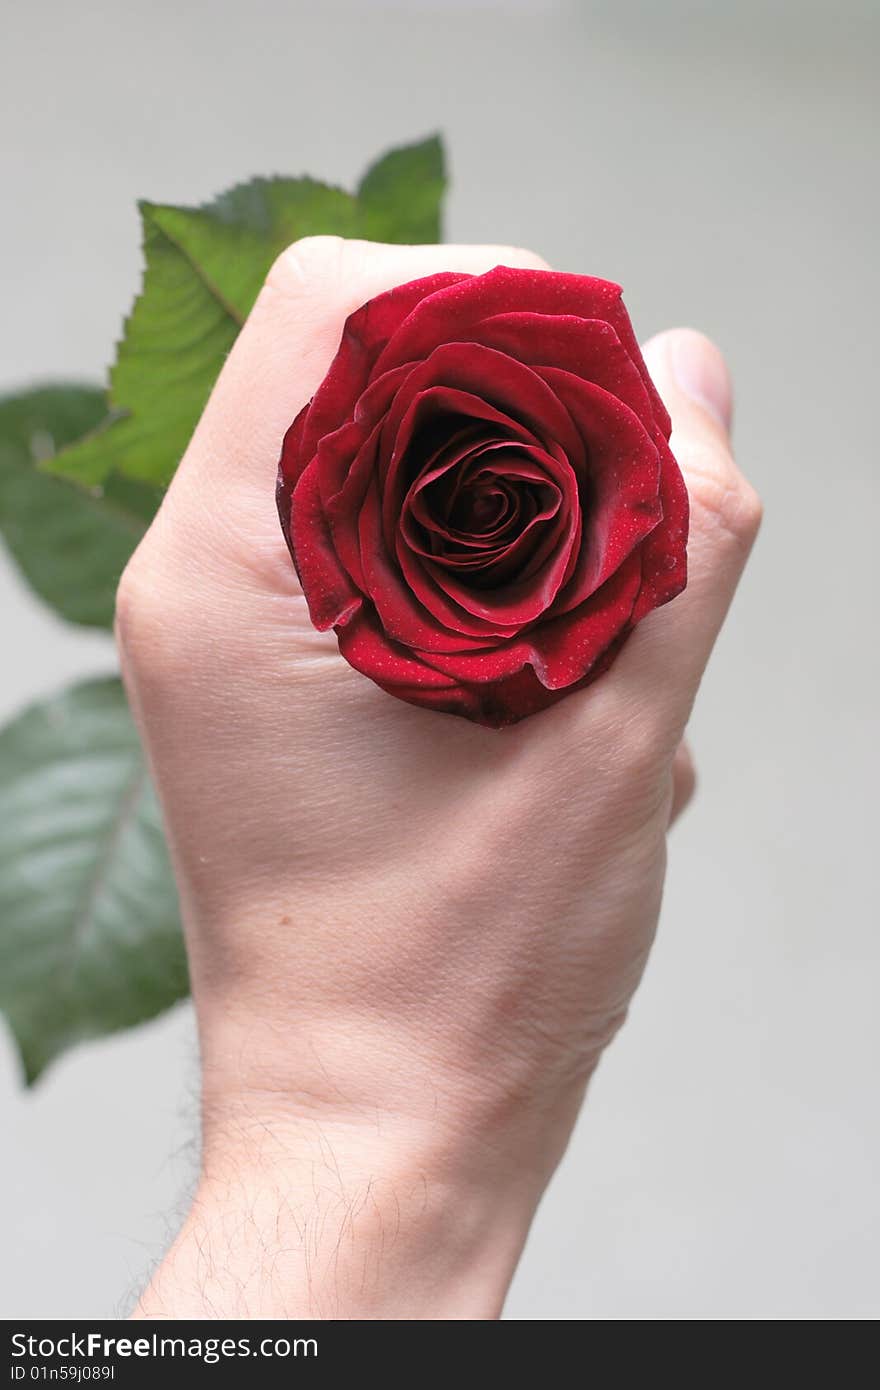 A rose is in the hand of man. A rose is in the hand of man